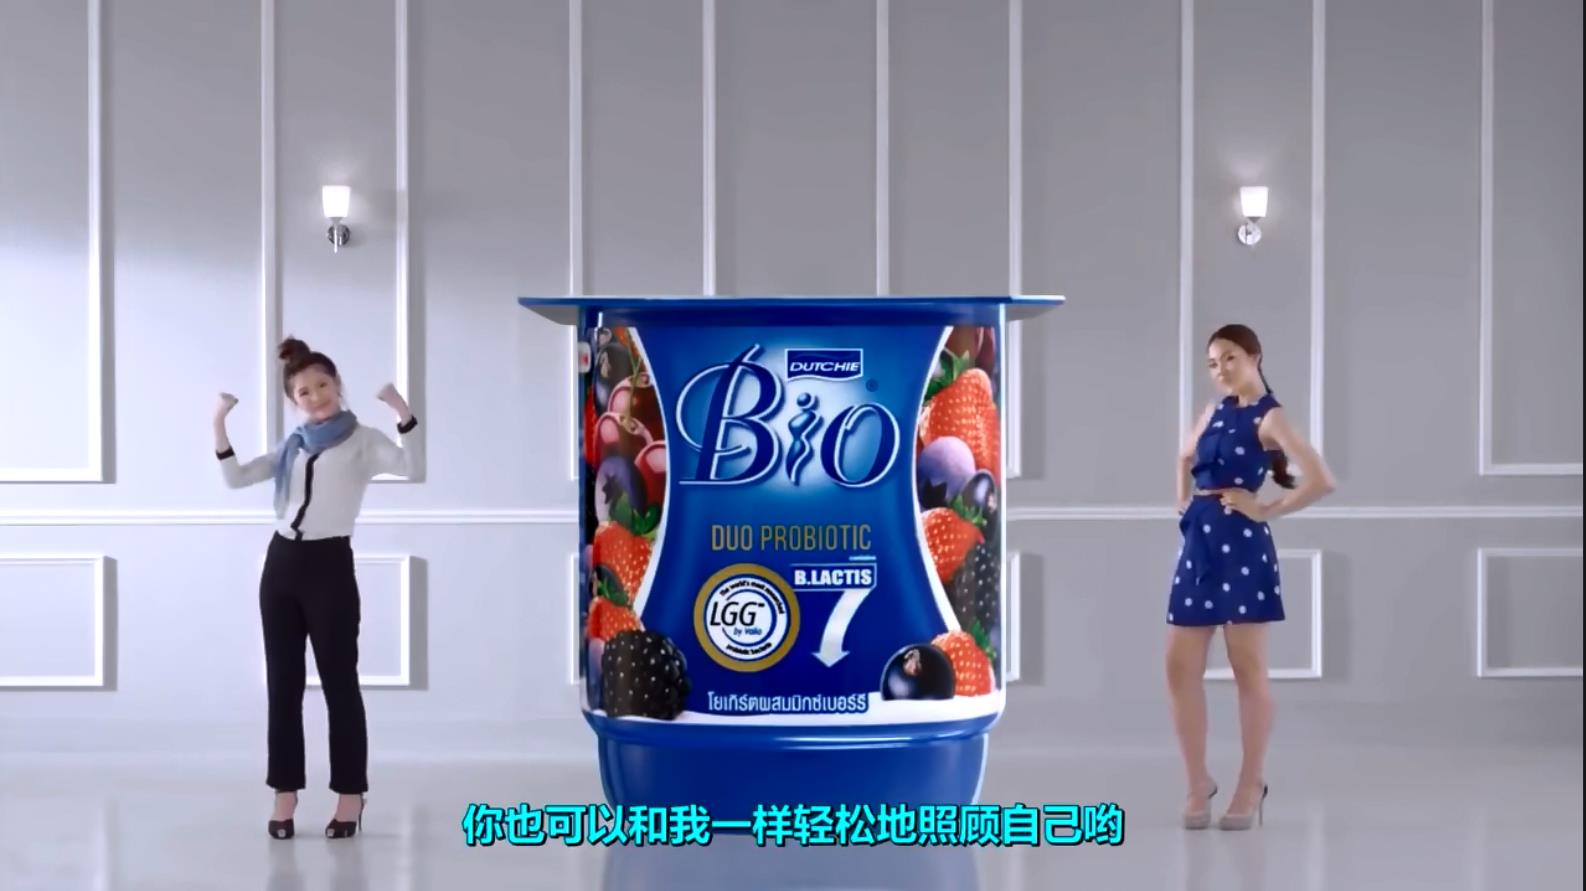 泰国DUTCHIE BIO酸奶搞笑广告 - 轻轻松松照顾自己